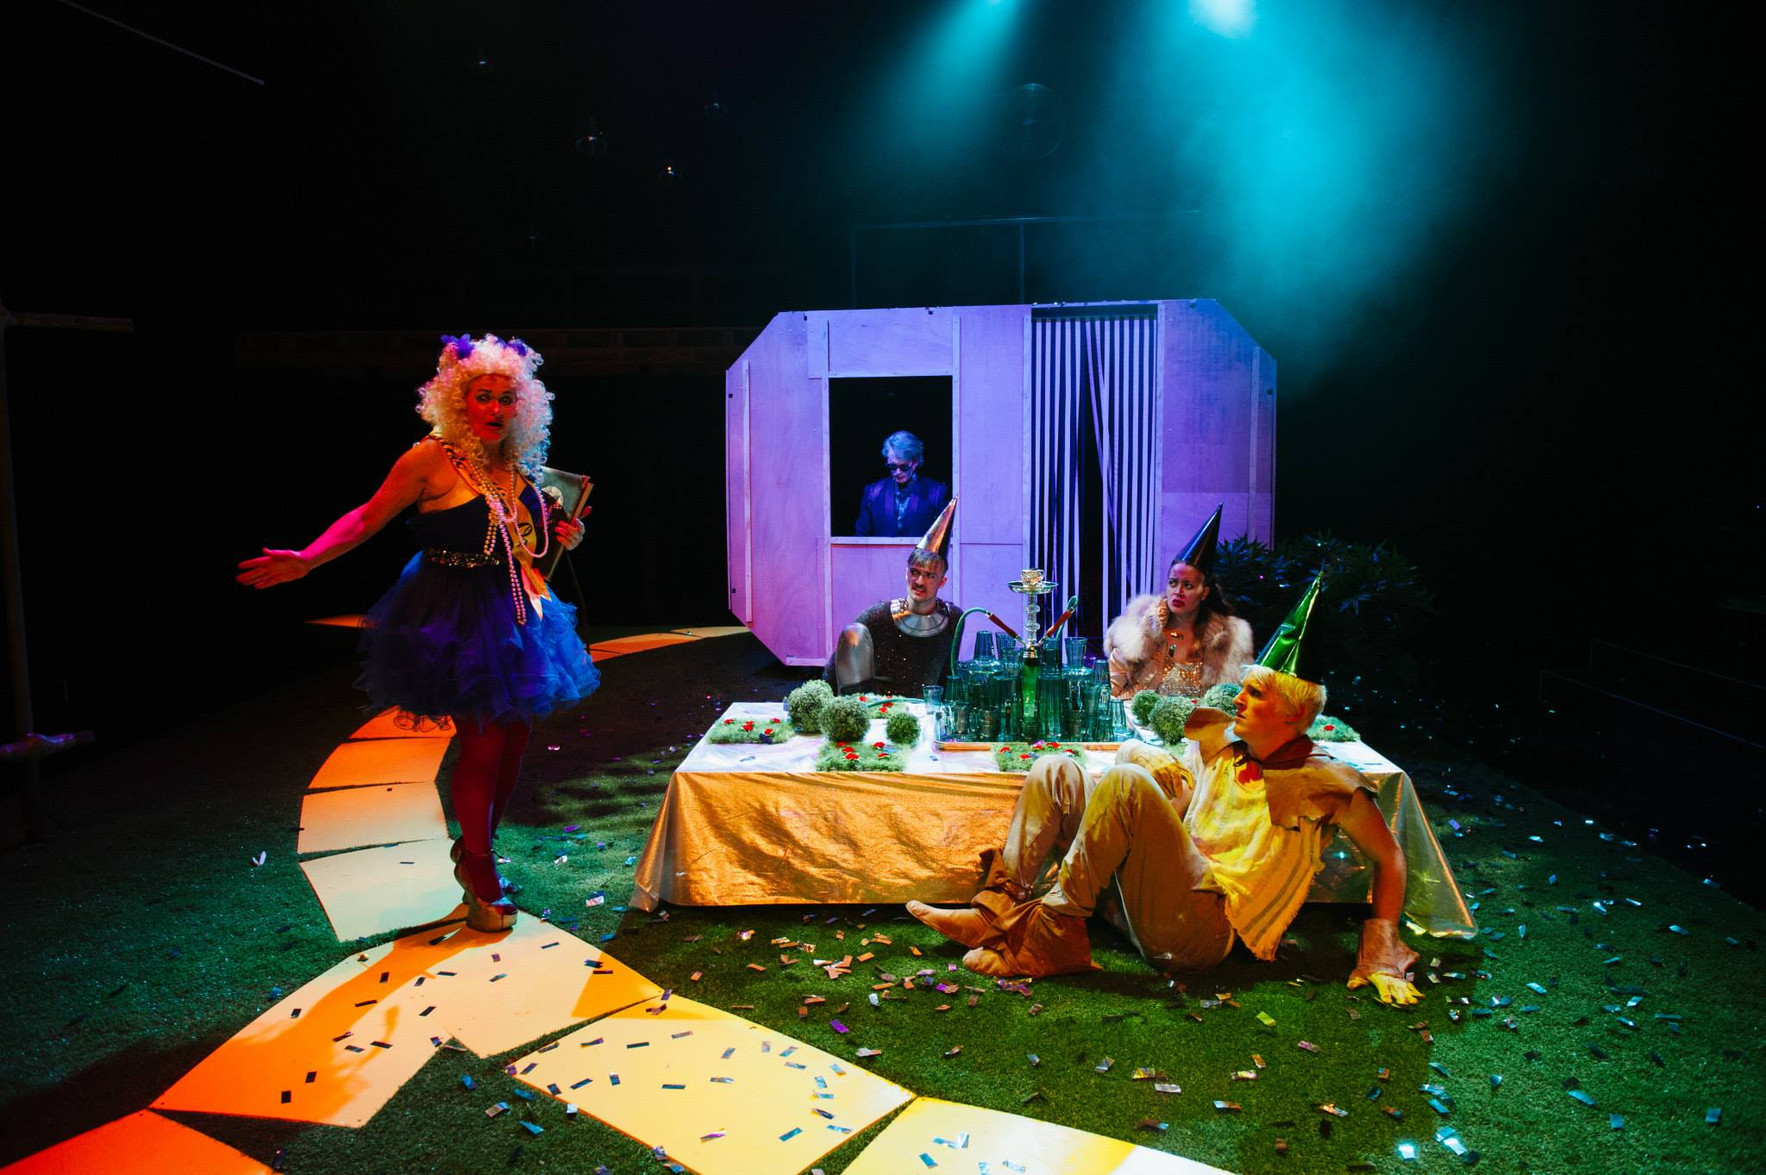 The Wizard of Oz / The Danger Ensemble, La Boîte Theatre Company & Brisbane Festival